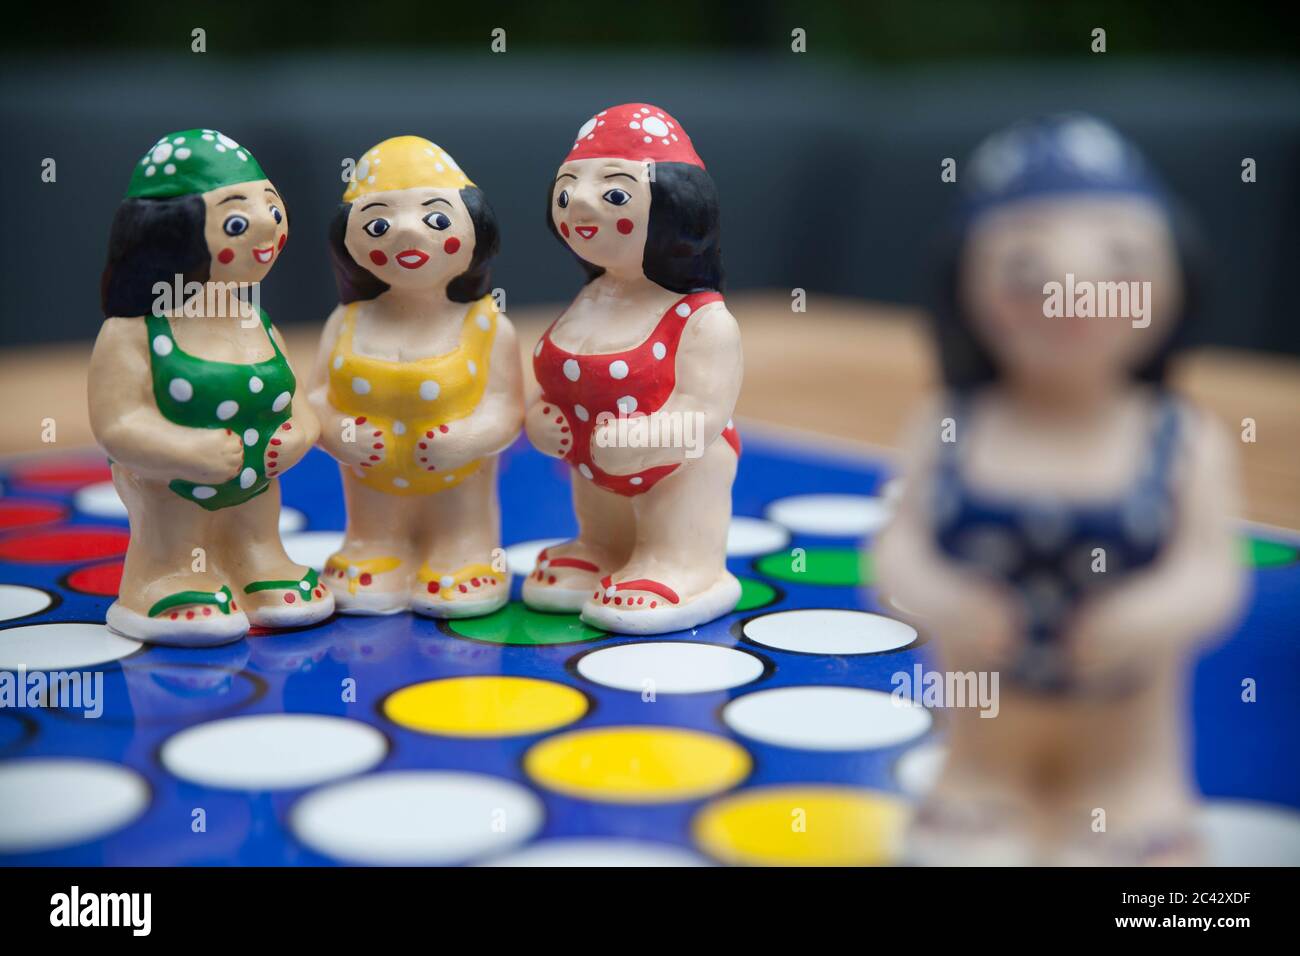 Amicizia e pettegolezzi: Una scena con quattro figurine che mostrano tre amici femminili che parlano o sussurrano in modo confidenziale, mentre un'altra donna guarda sopra. Foto Stock